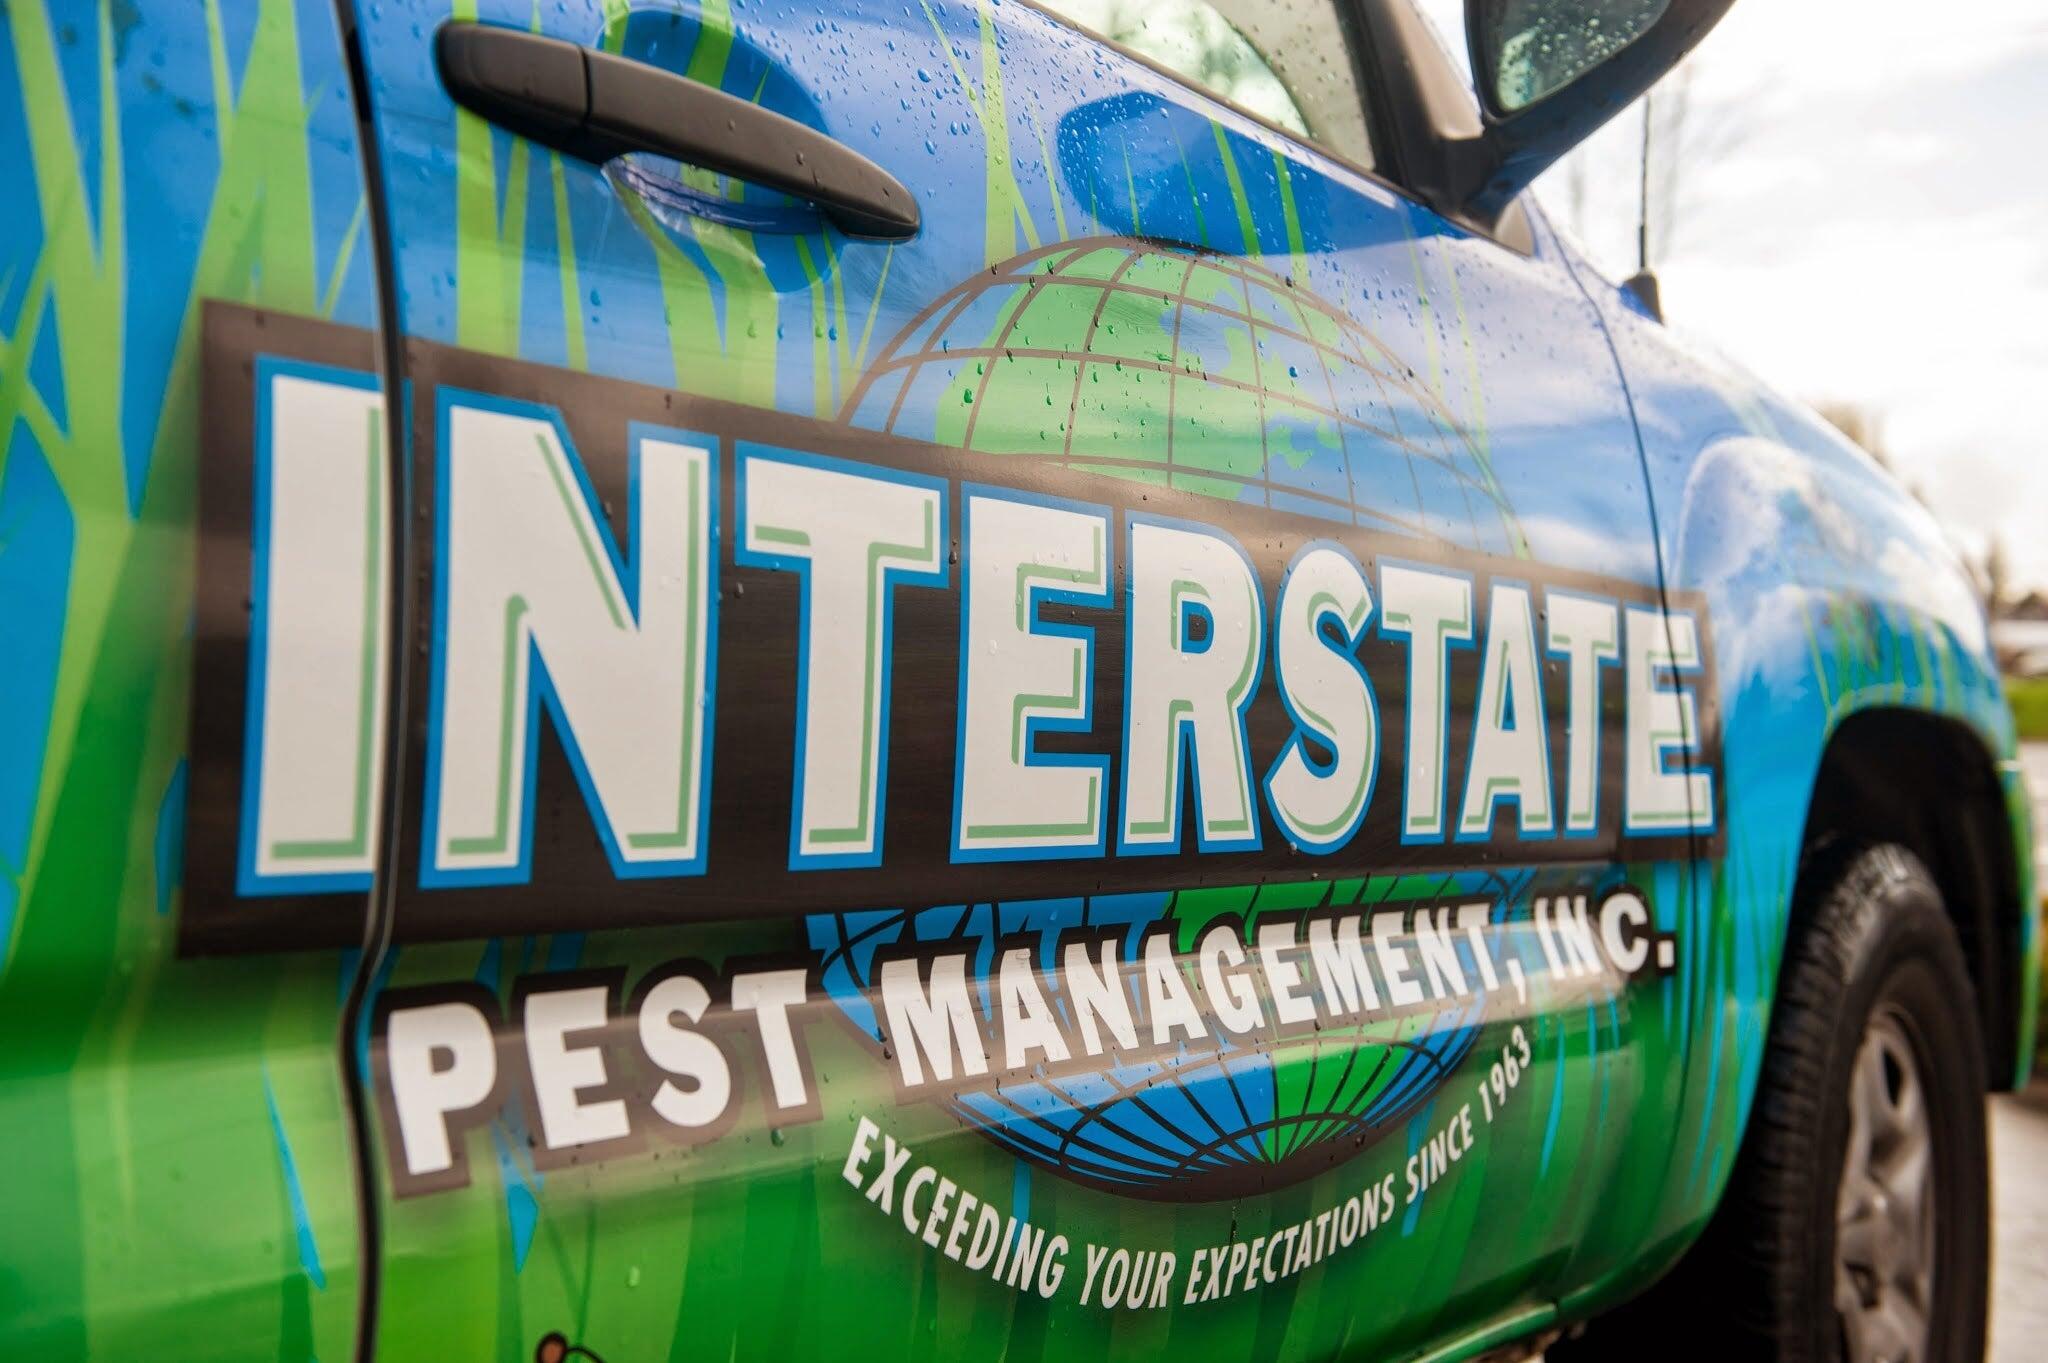 Interstate Pest Management 1301 Elm St, Kelso Washington 98626